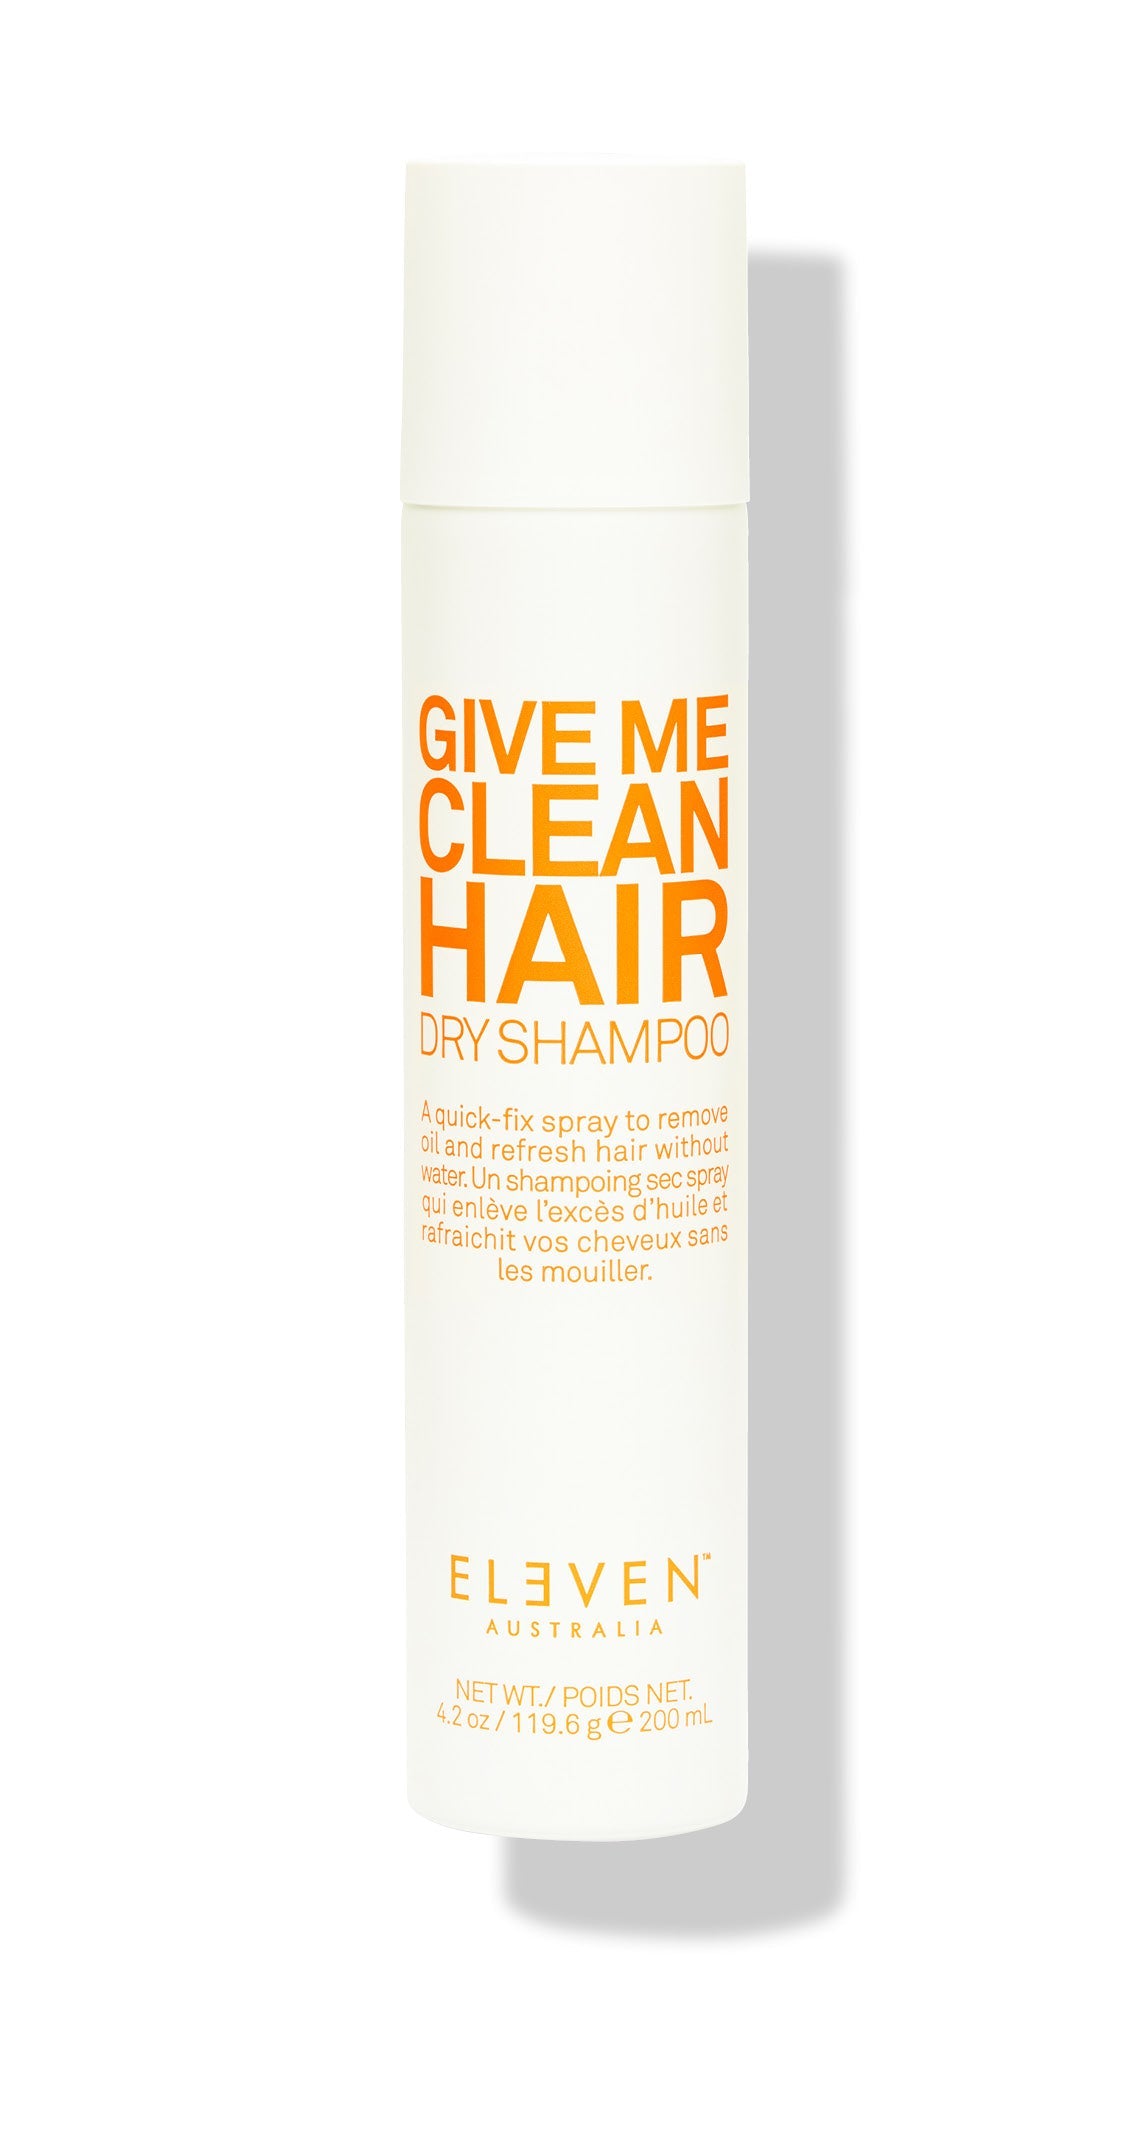 GIVE ME CLEAN HAIR DRY SHAMPOO 3.5 FL OZ